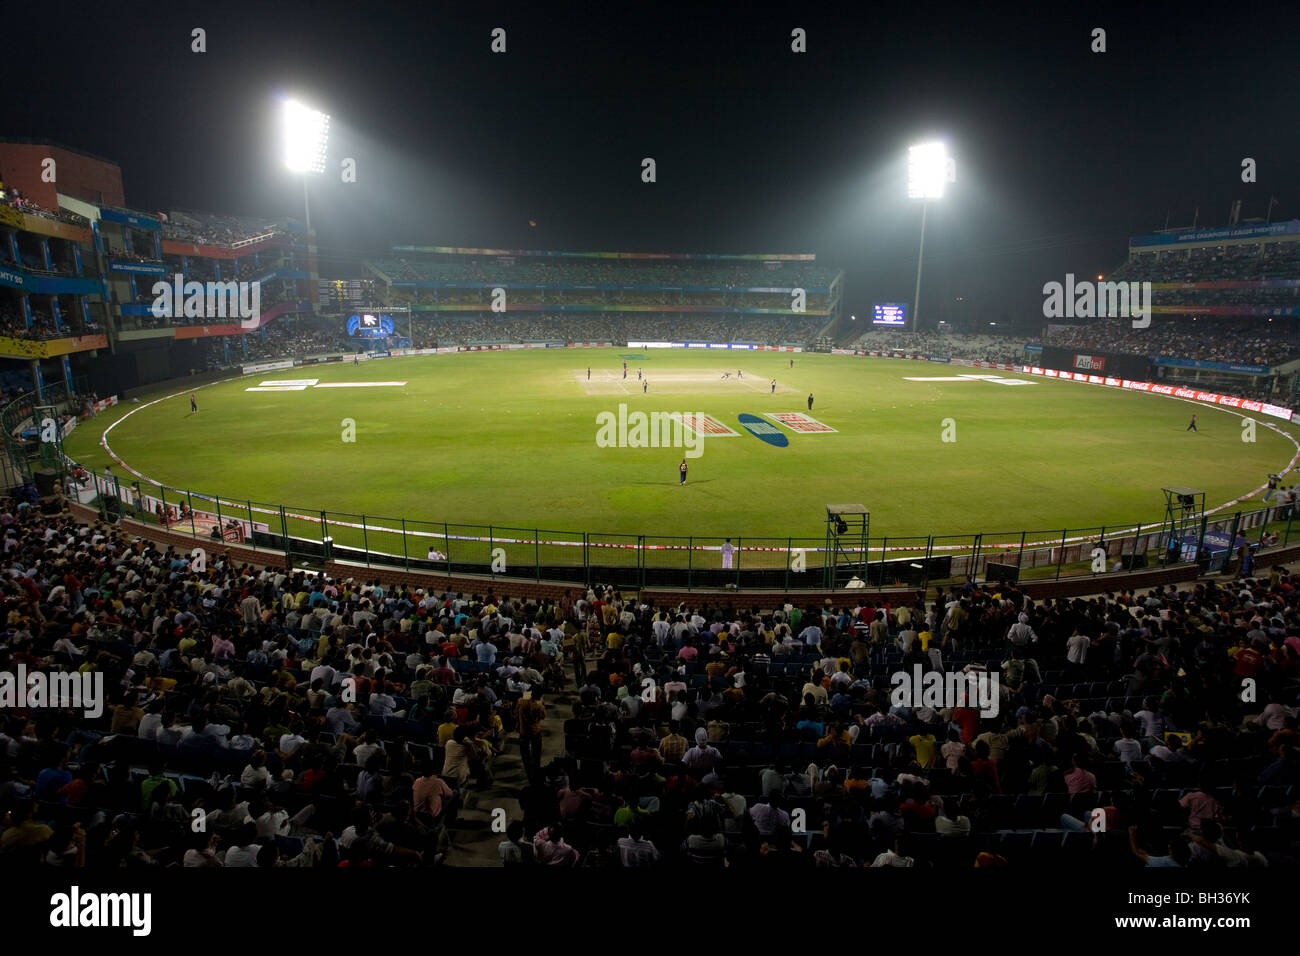 Allgemeine Ansicht von der Feroz Shah Kotla Stadion in New Delhi, Indien.  Bild von James Boardmann Stockfoto